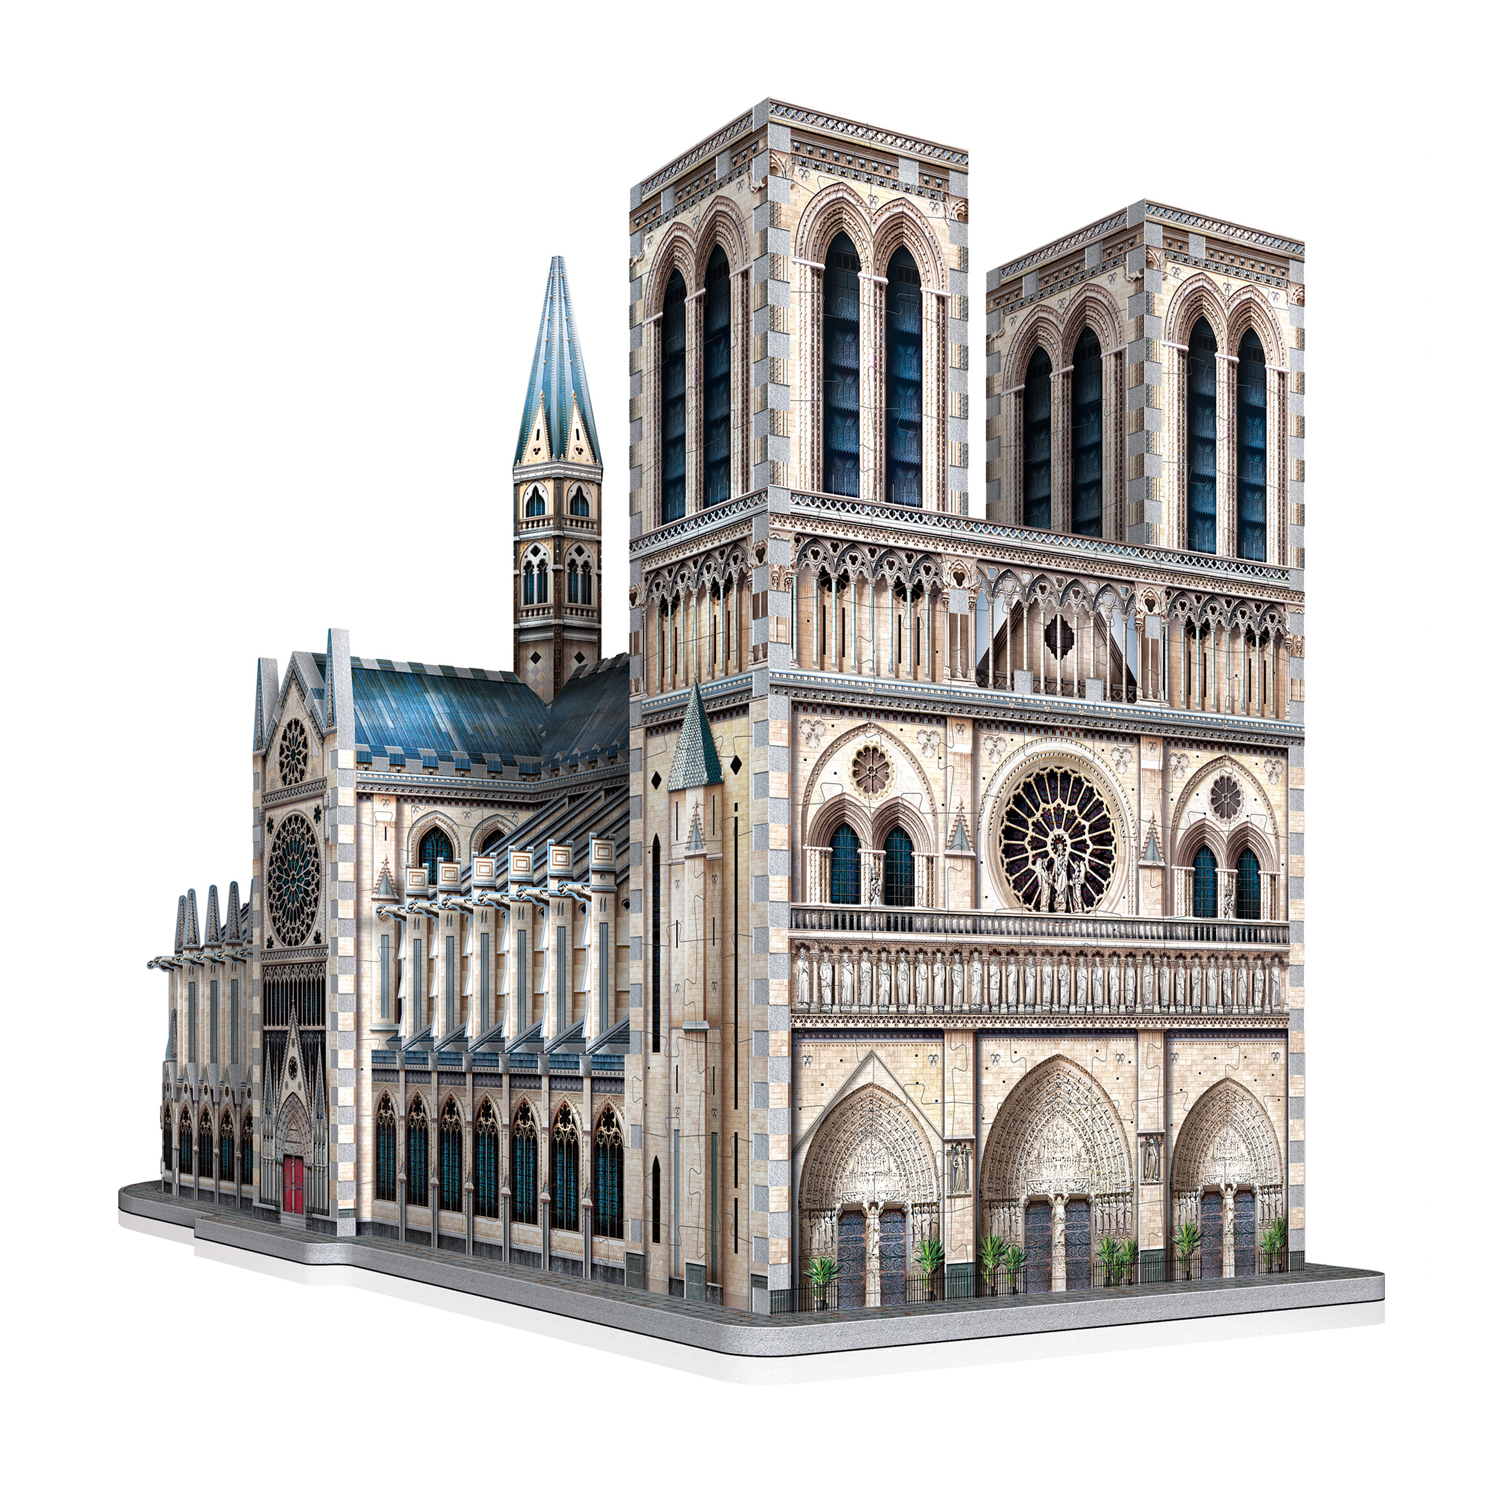 Notre-Dame de Paris, Cathedrals